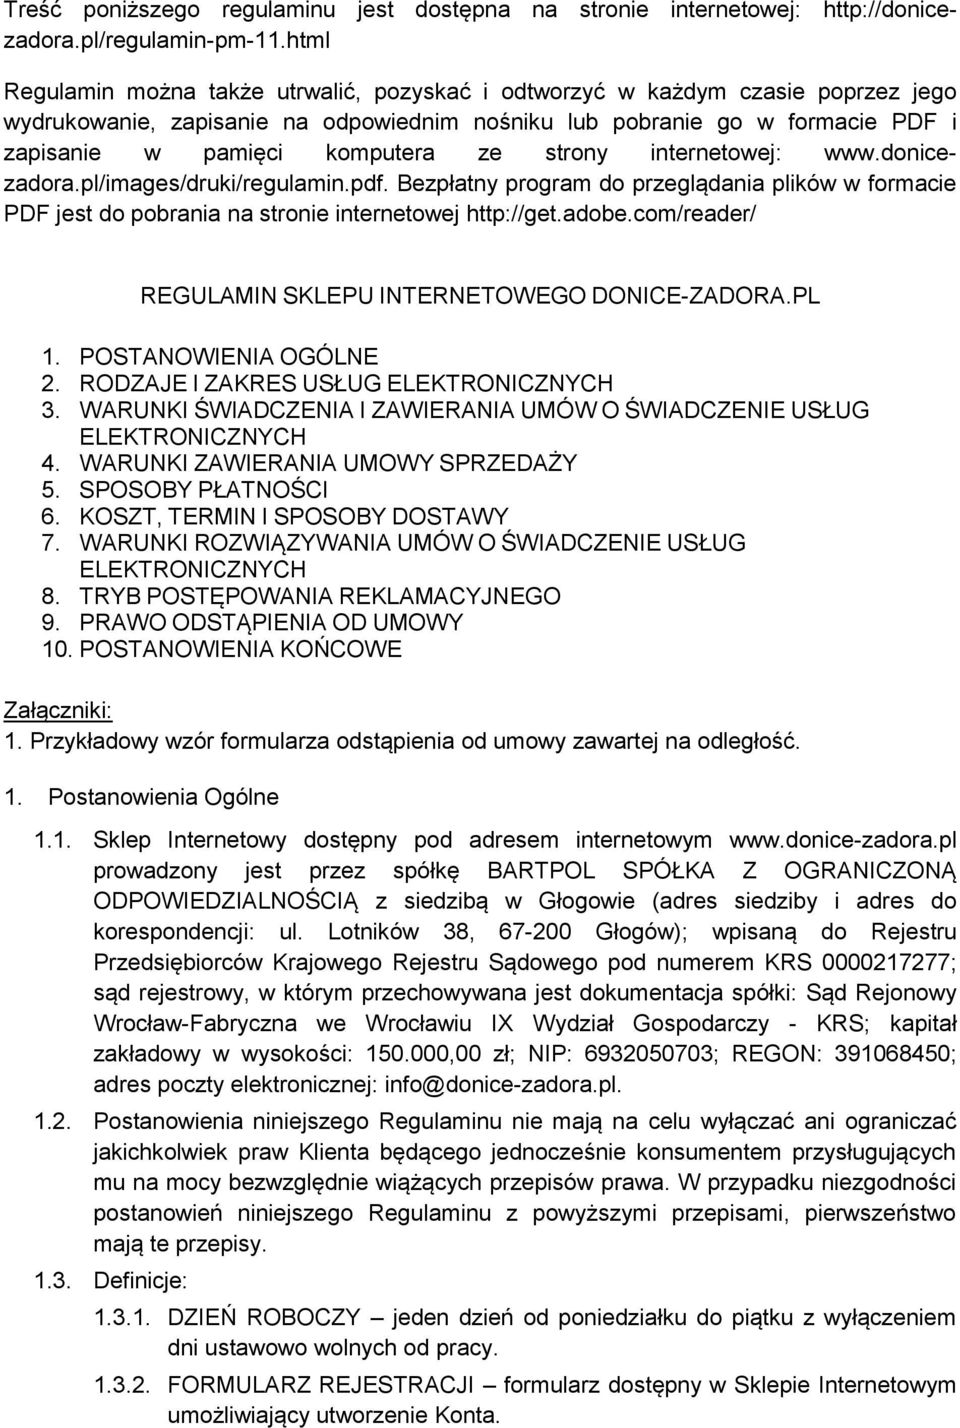 strony internetowej: www.donicezadora.pl/images/druki/regulamin.pdf. Bezpłatny program do przeglądania plików w formacie PDF jest do pobrania na stronie internetowej http://get.adobe.